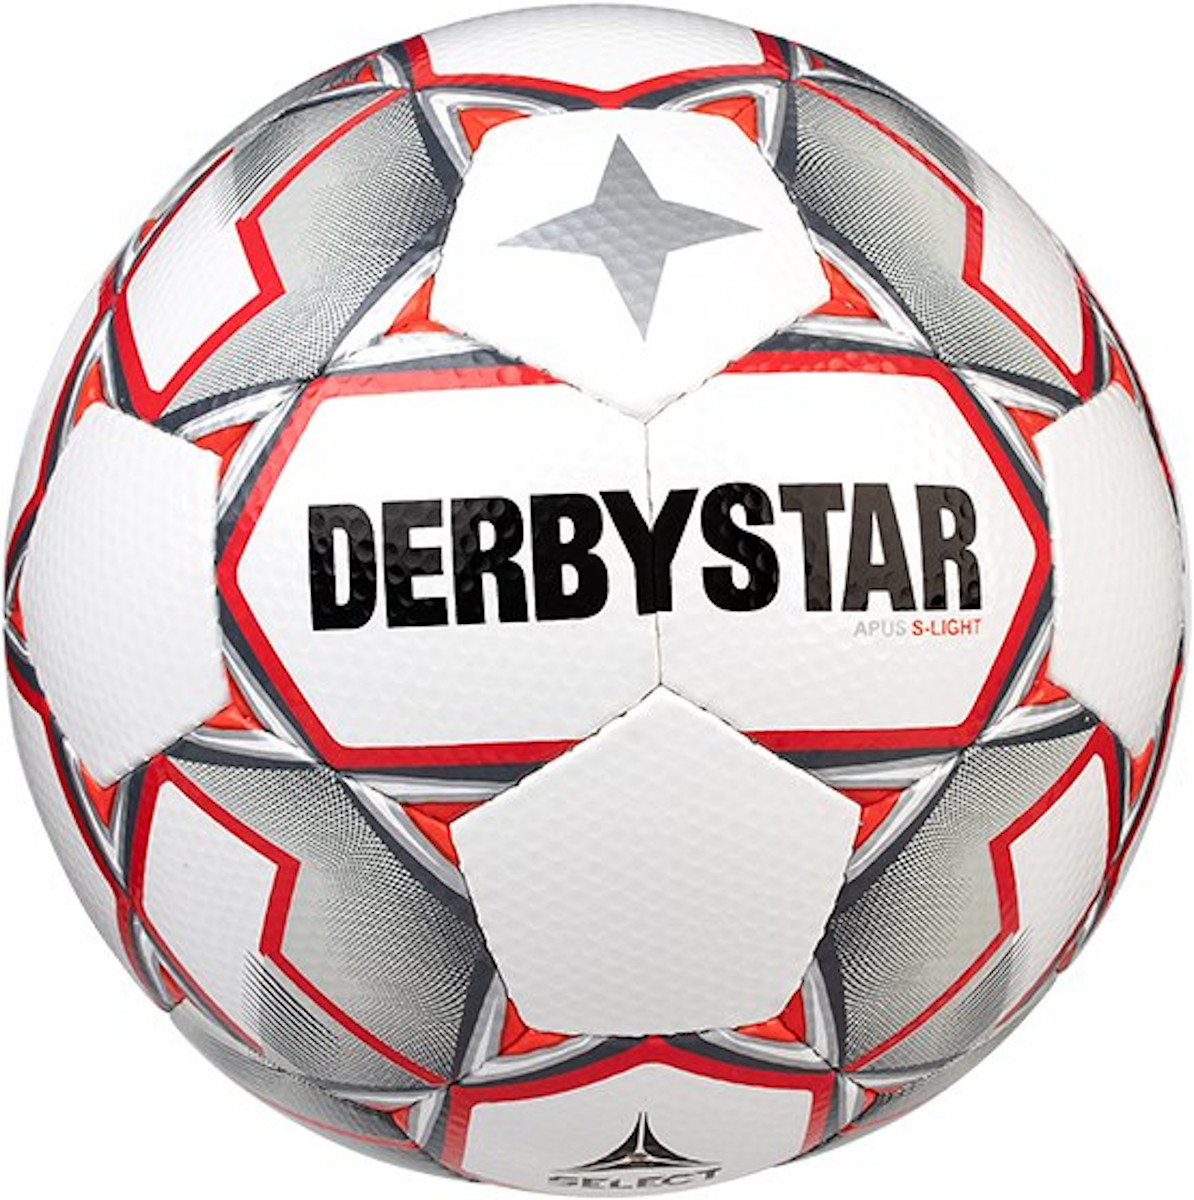 Žoga Derbystar Apus S-Light v20 290 grams Lightball